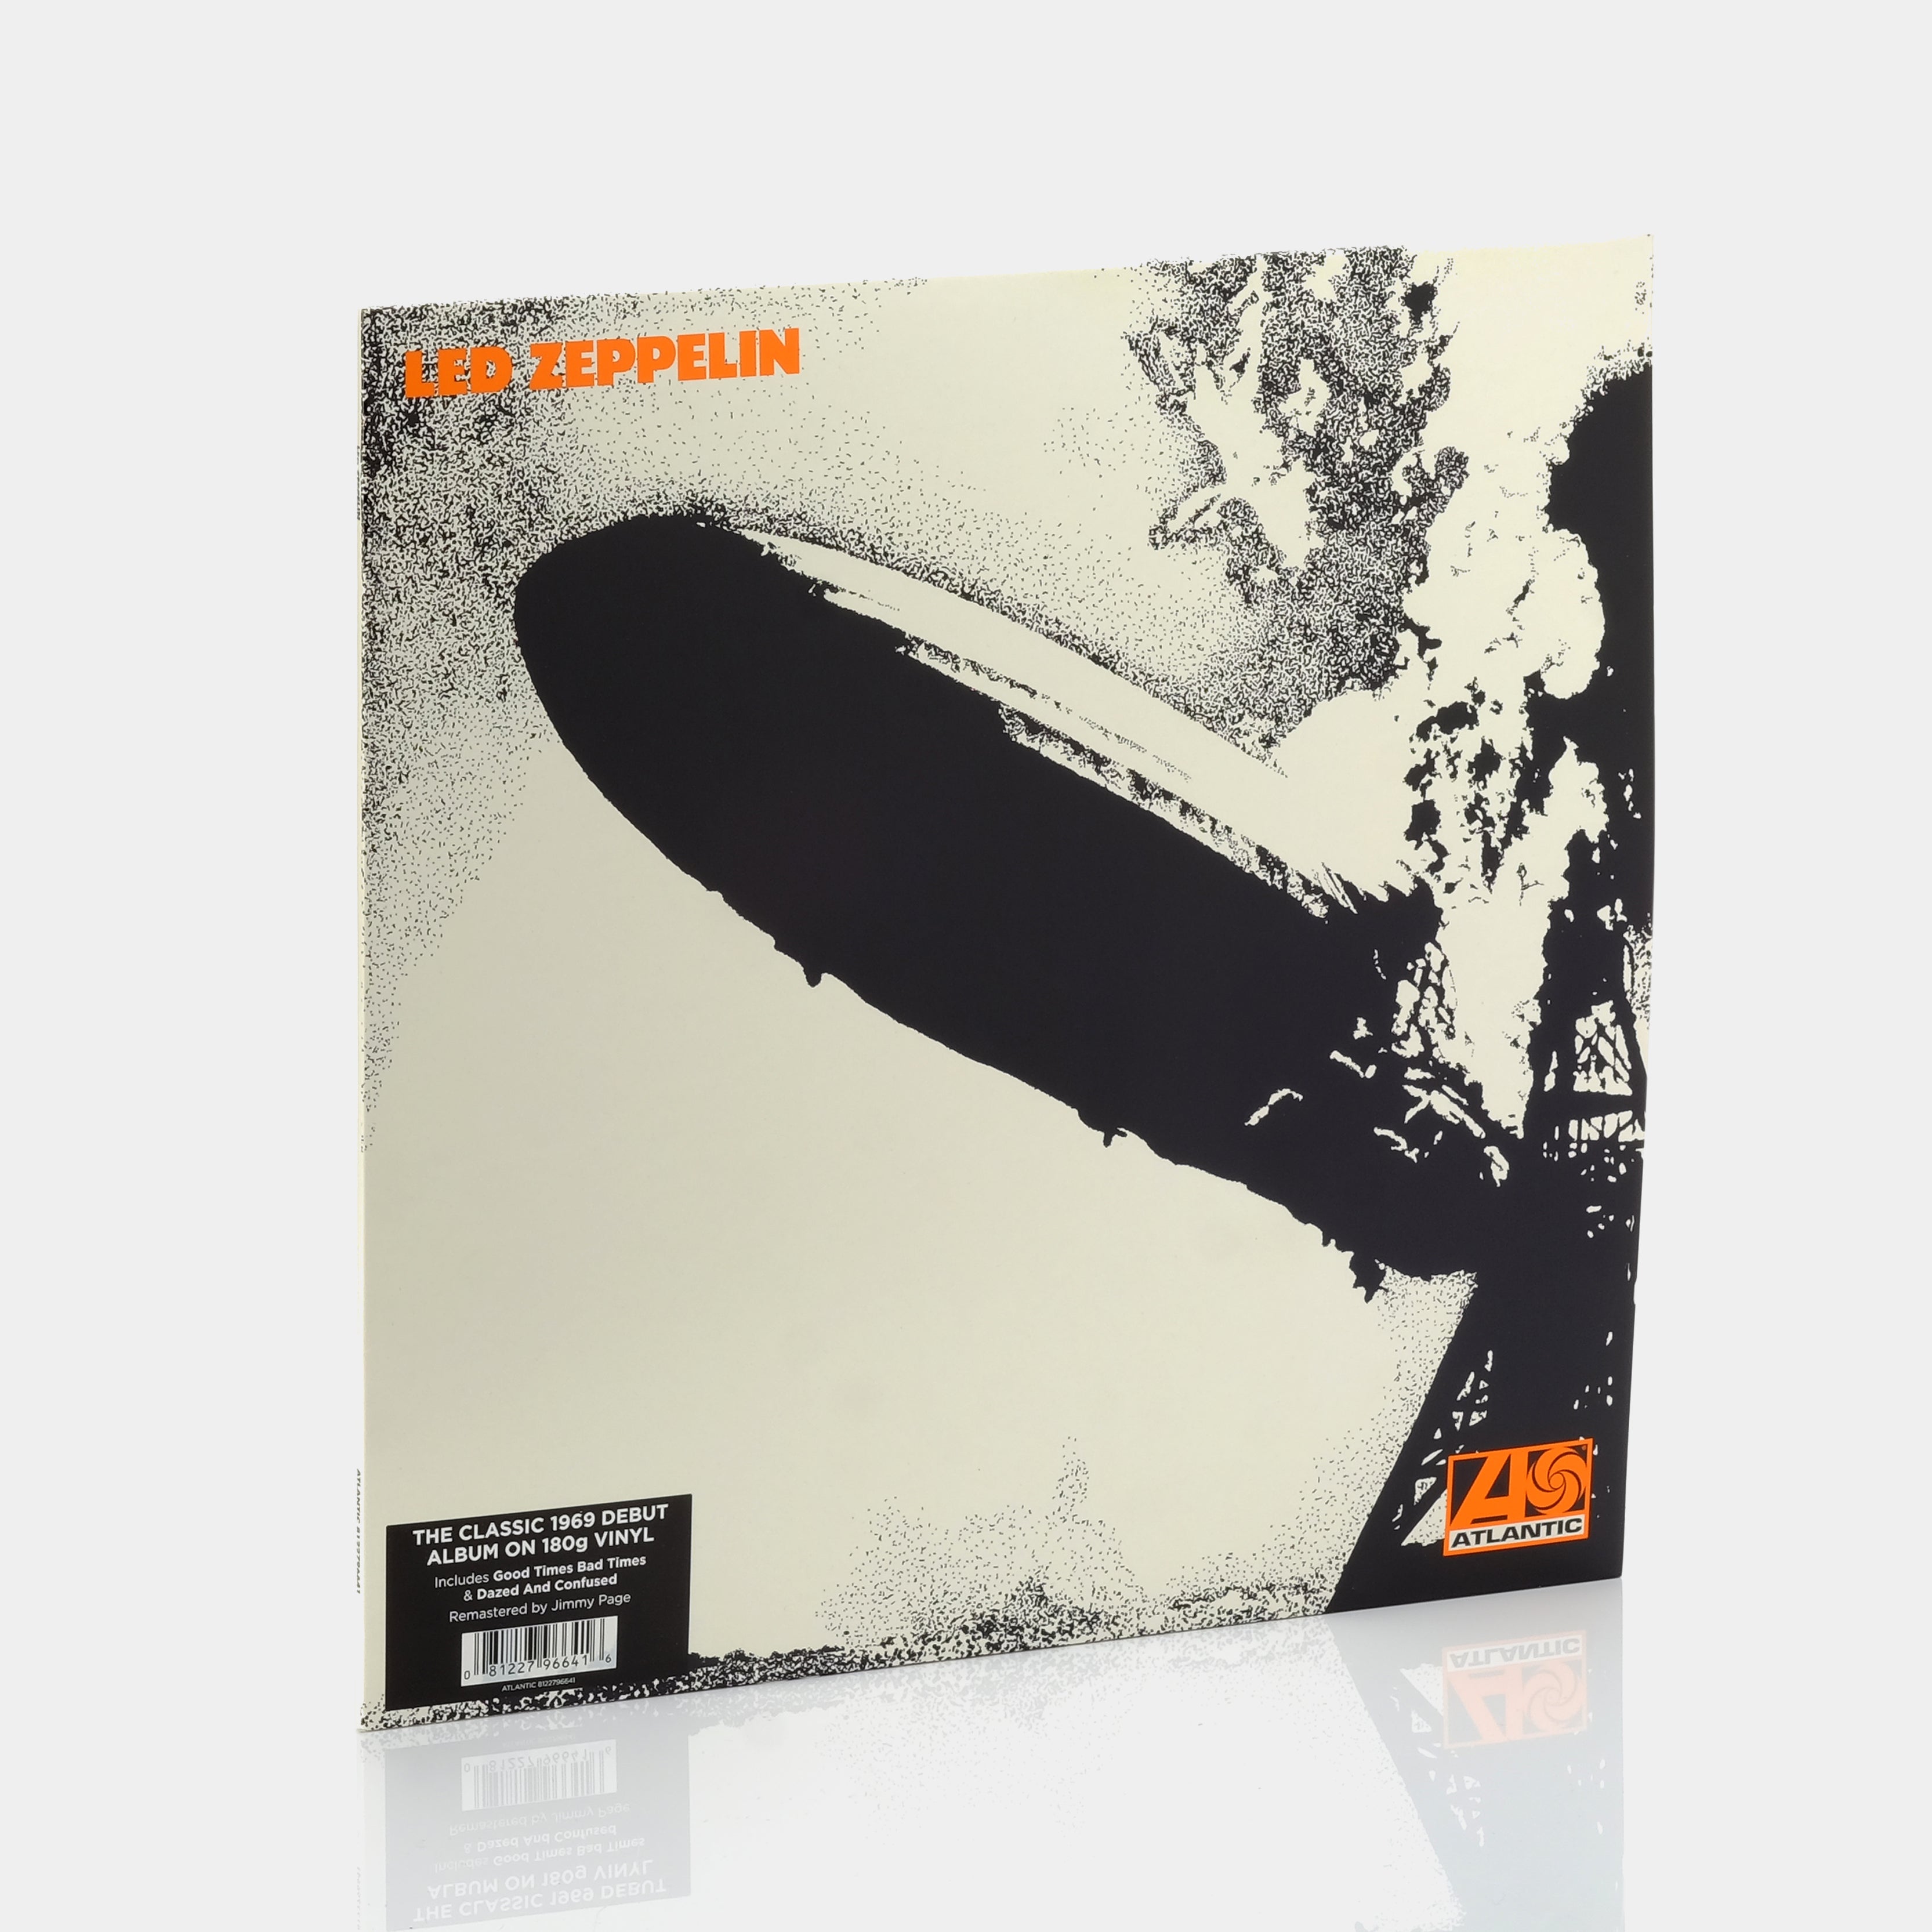 Led Zeppelin - Led Zeppelin I LP Vinyl Record